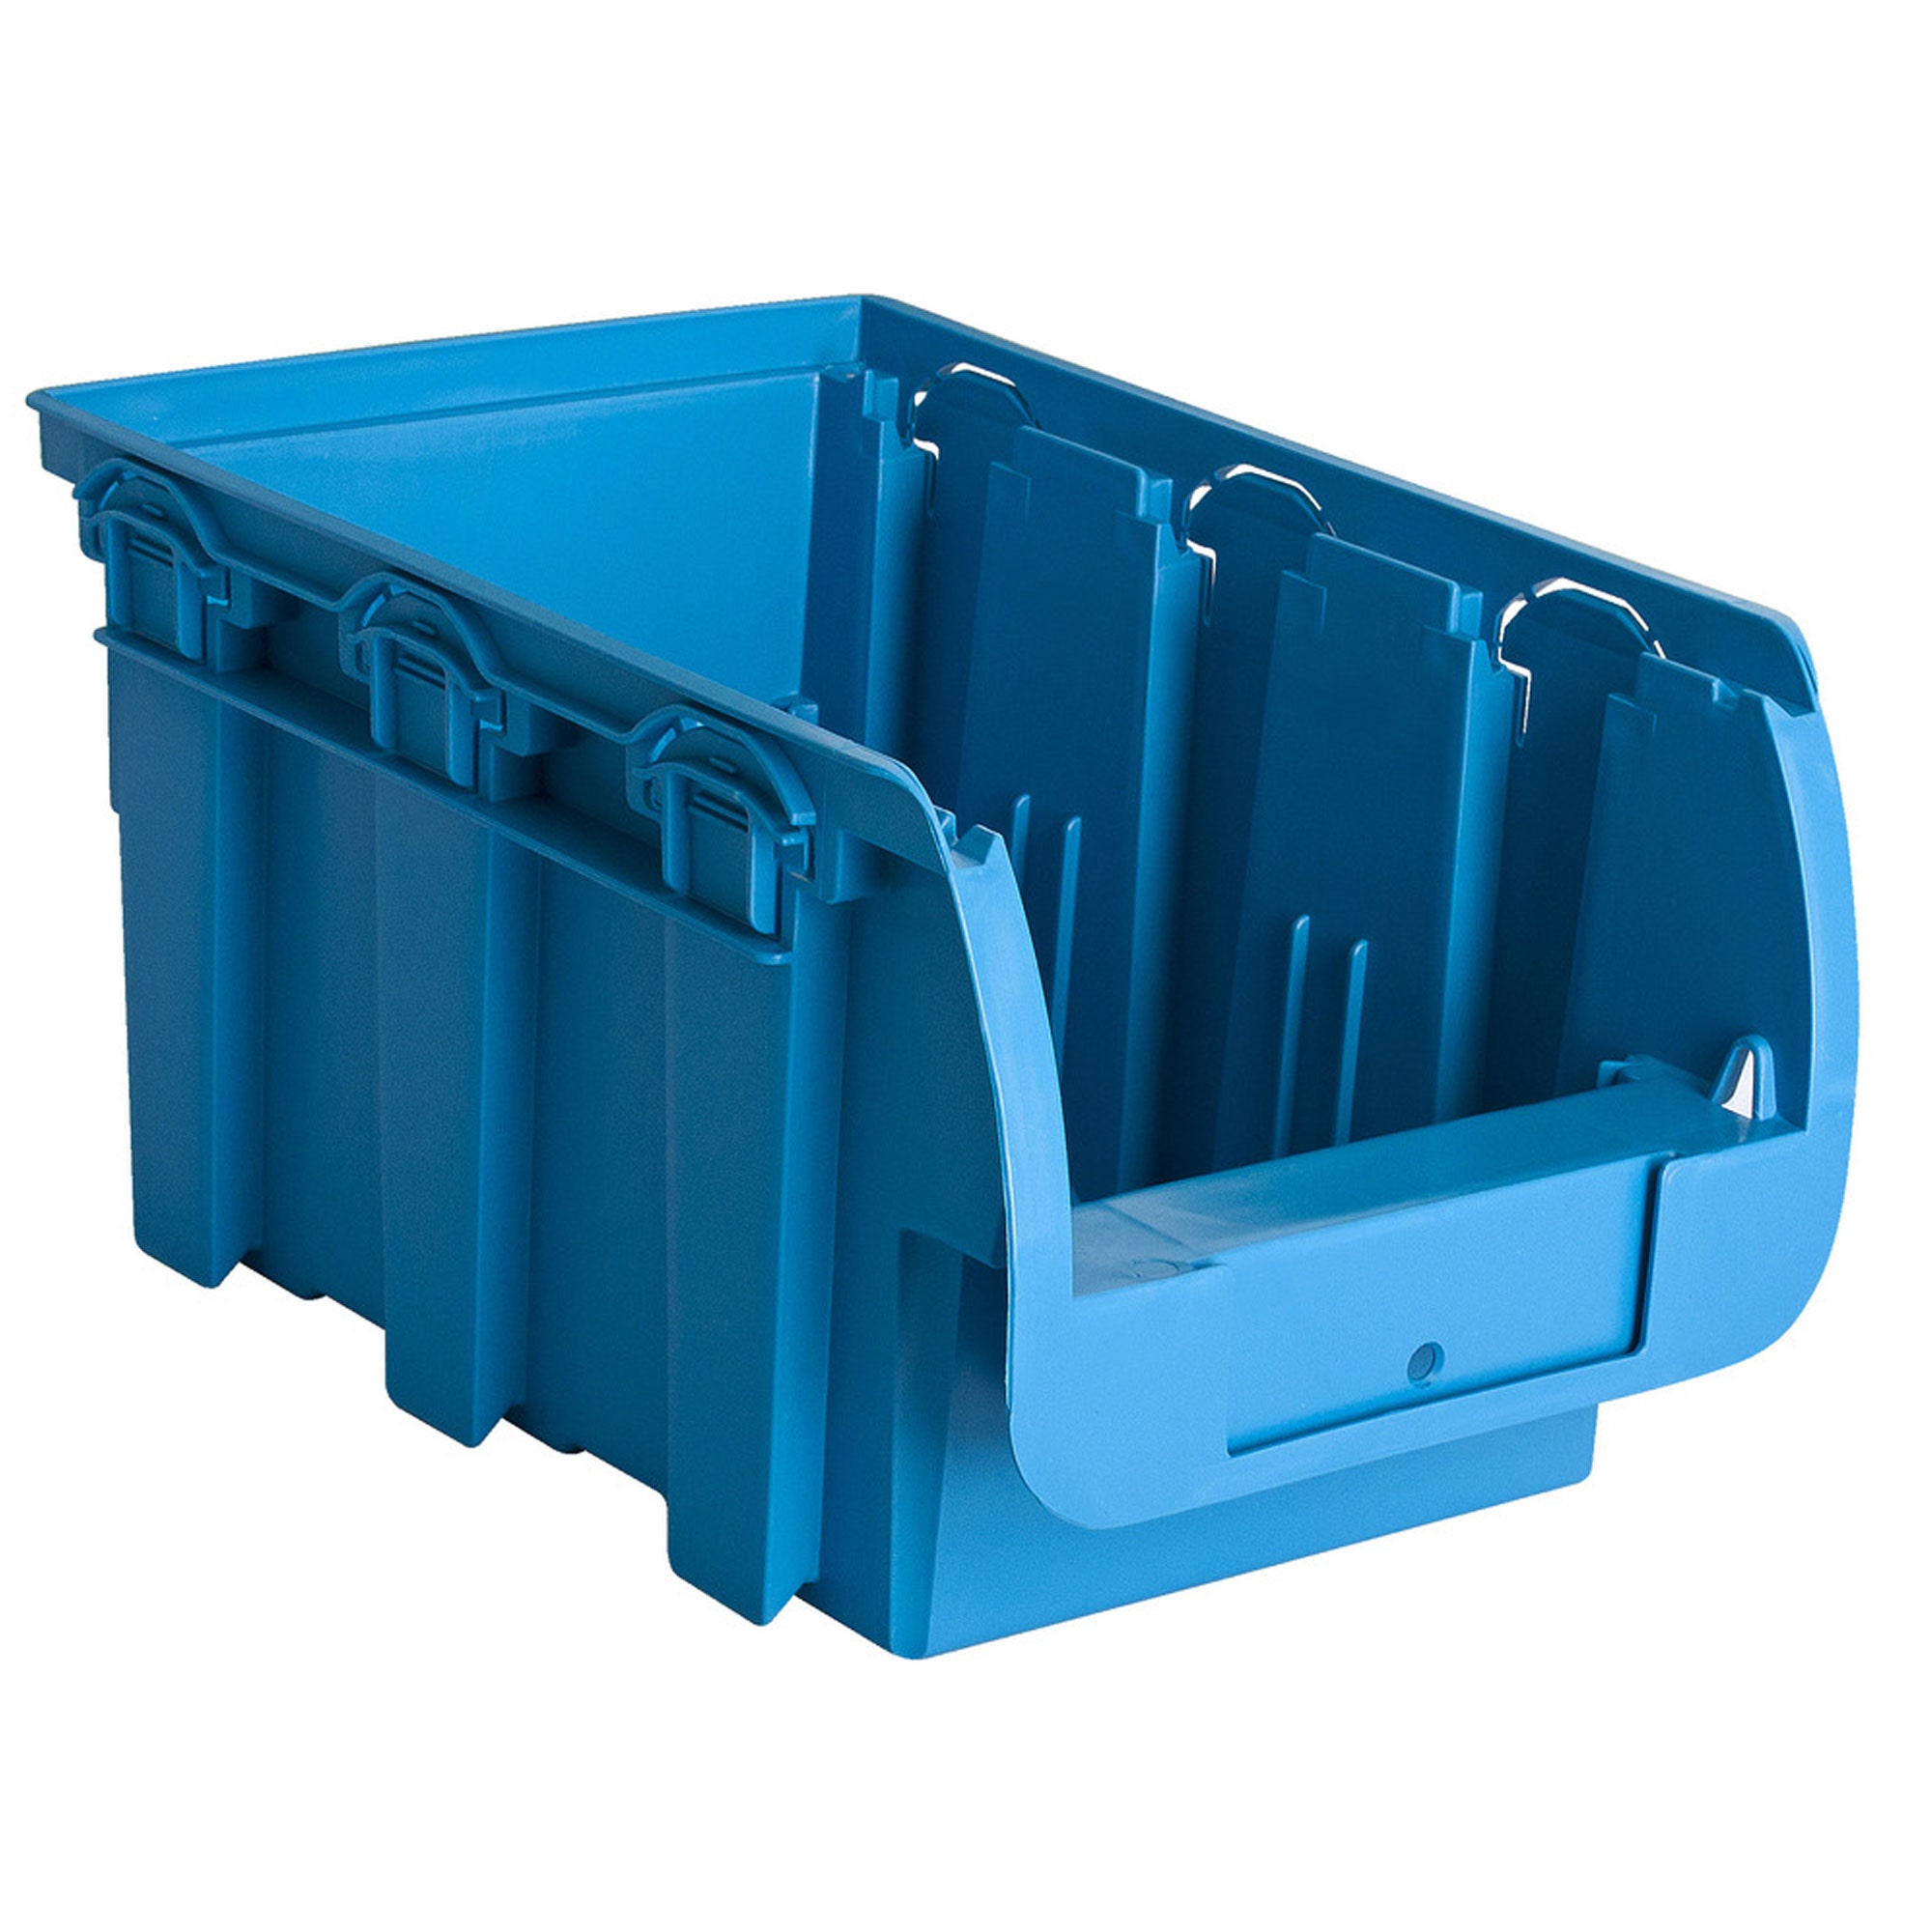 Cutie pentru depozitare, Unior 625663, albastru, 330 x 200 x 150 mm, set 3 bucati